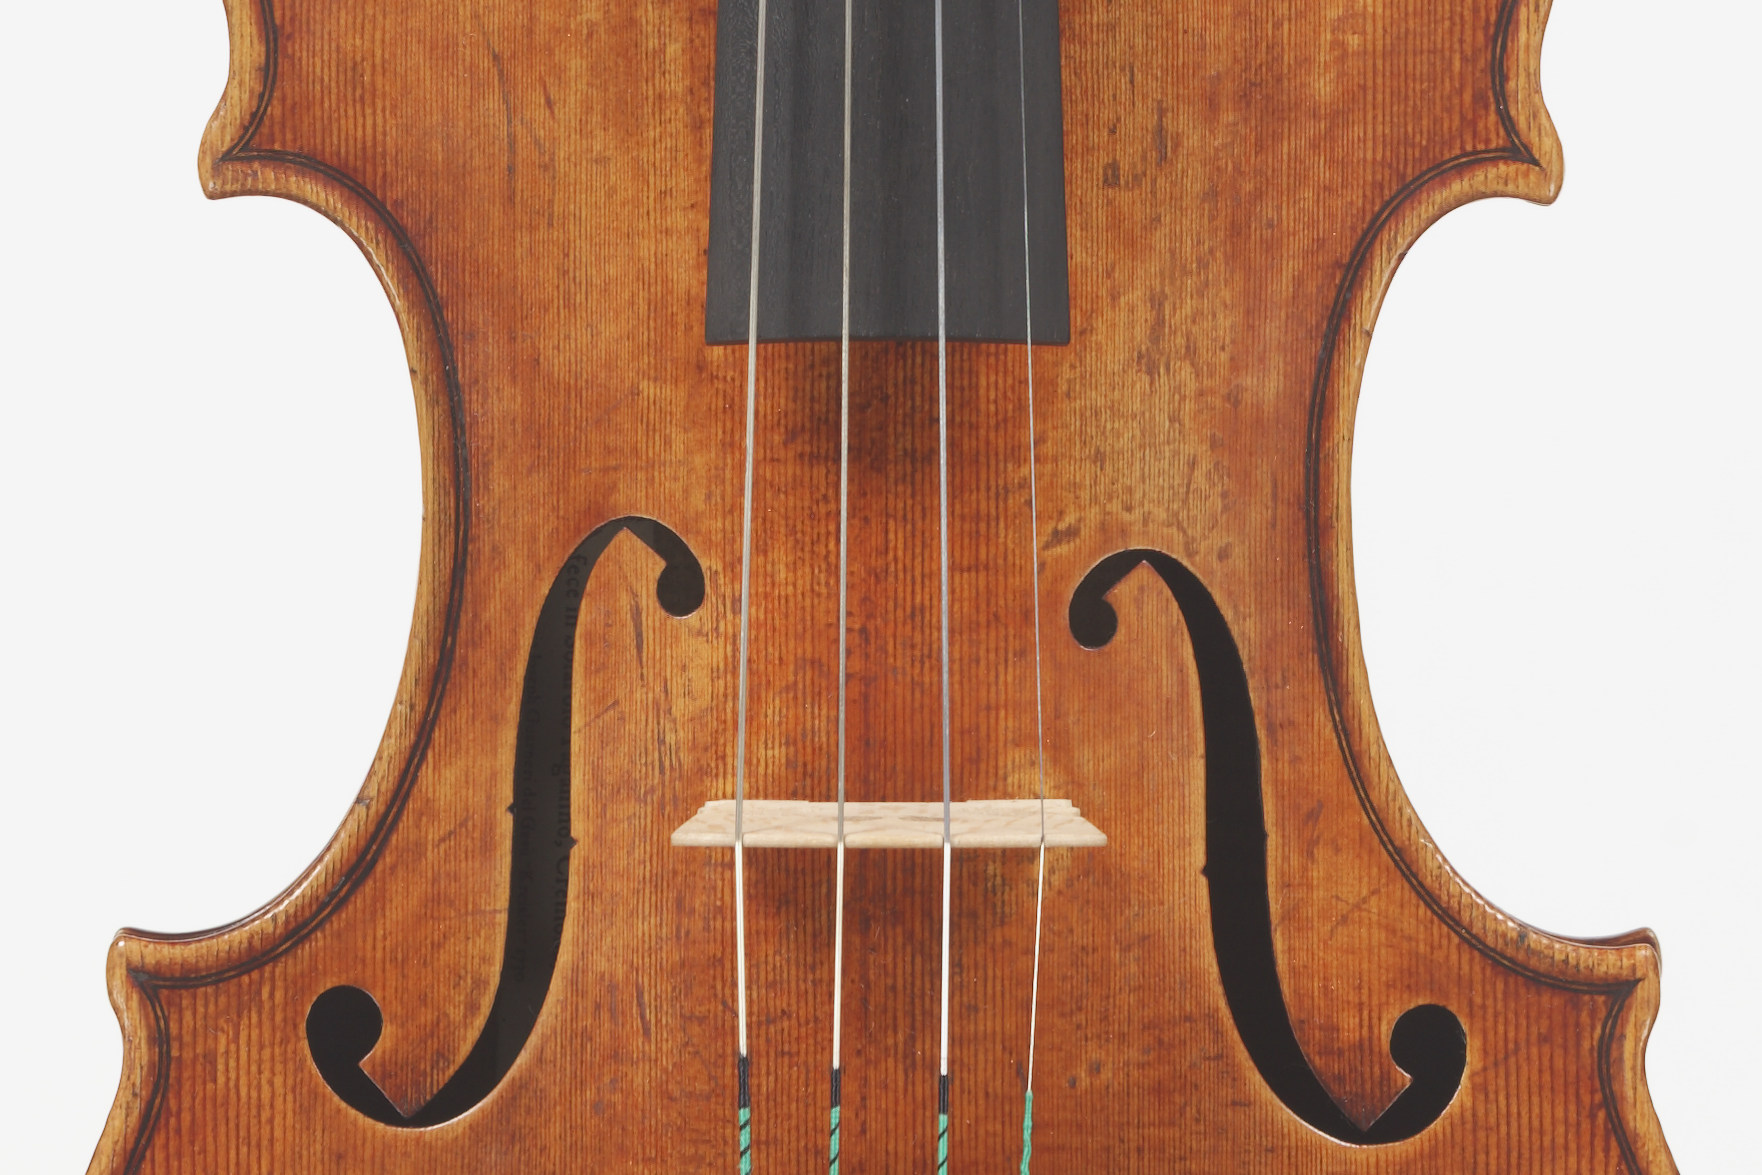 *待望の再入荷！Jens G. Johansson, Italy - Cremona, 2017 イェンス・G・ヨハンソンは、イタリア・クレモナのヴァイオリン製作者の間でも評判の「製作家が認める製作家」です。]]彼の元には、複数の「ヴァイオリンメーカー」からの困難なオールド楽器修復依頼が舞い込み、日 […]